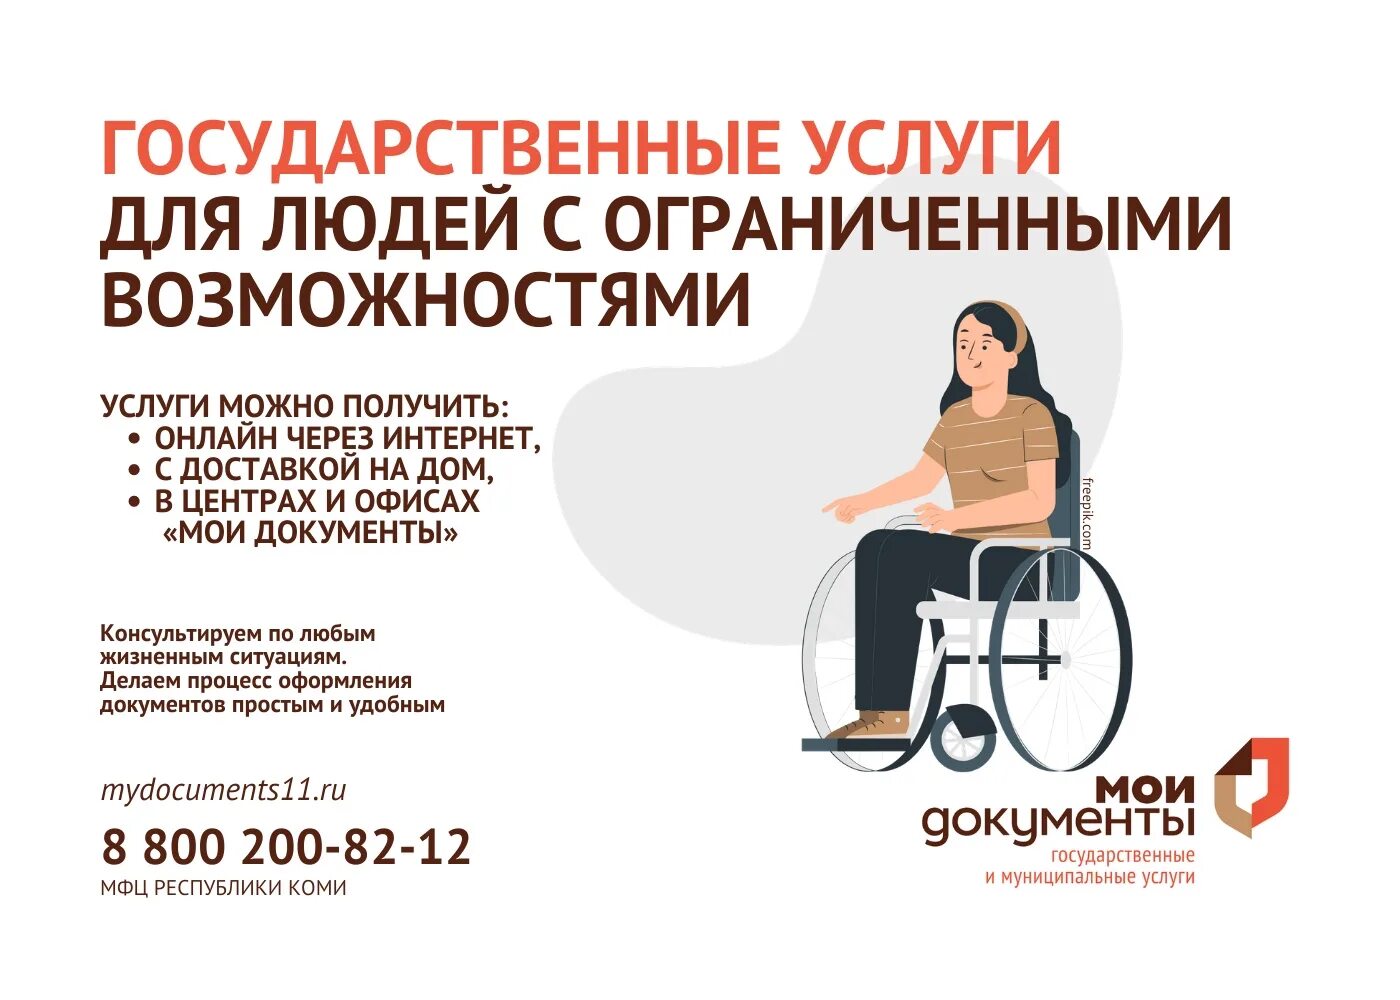 МФЦ инвалиды. МФЦ доступная среда для инвалидов. Обслуживание инвалидов в МФЦ. Доступная среда в МФЦ. Мфц льготы инвалидам